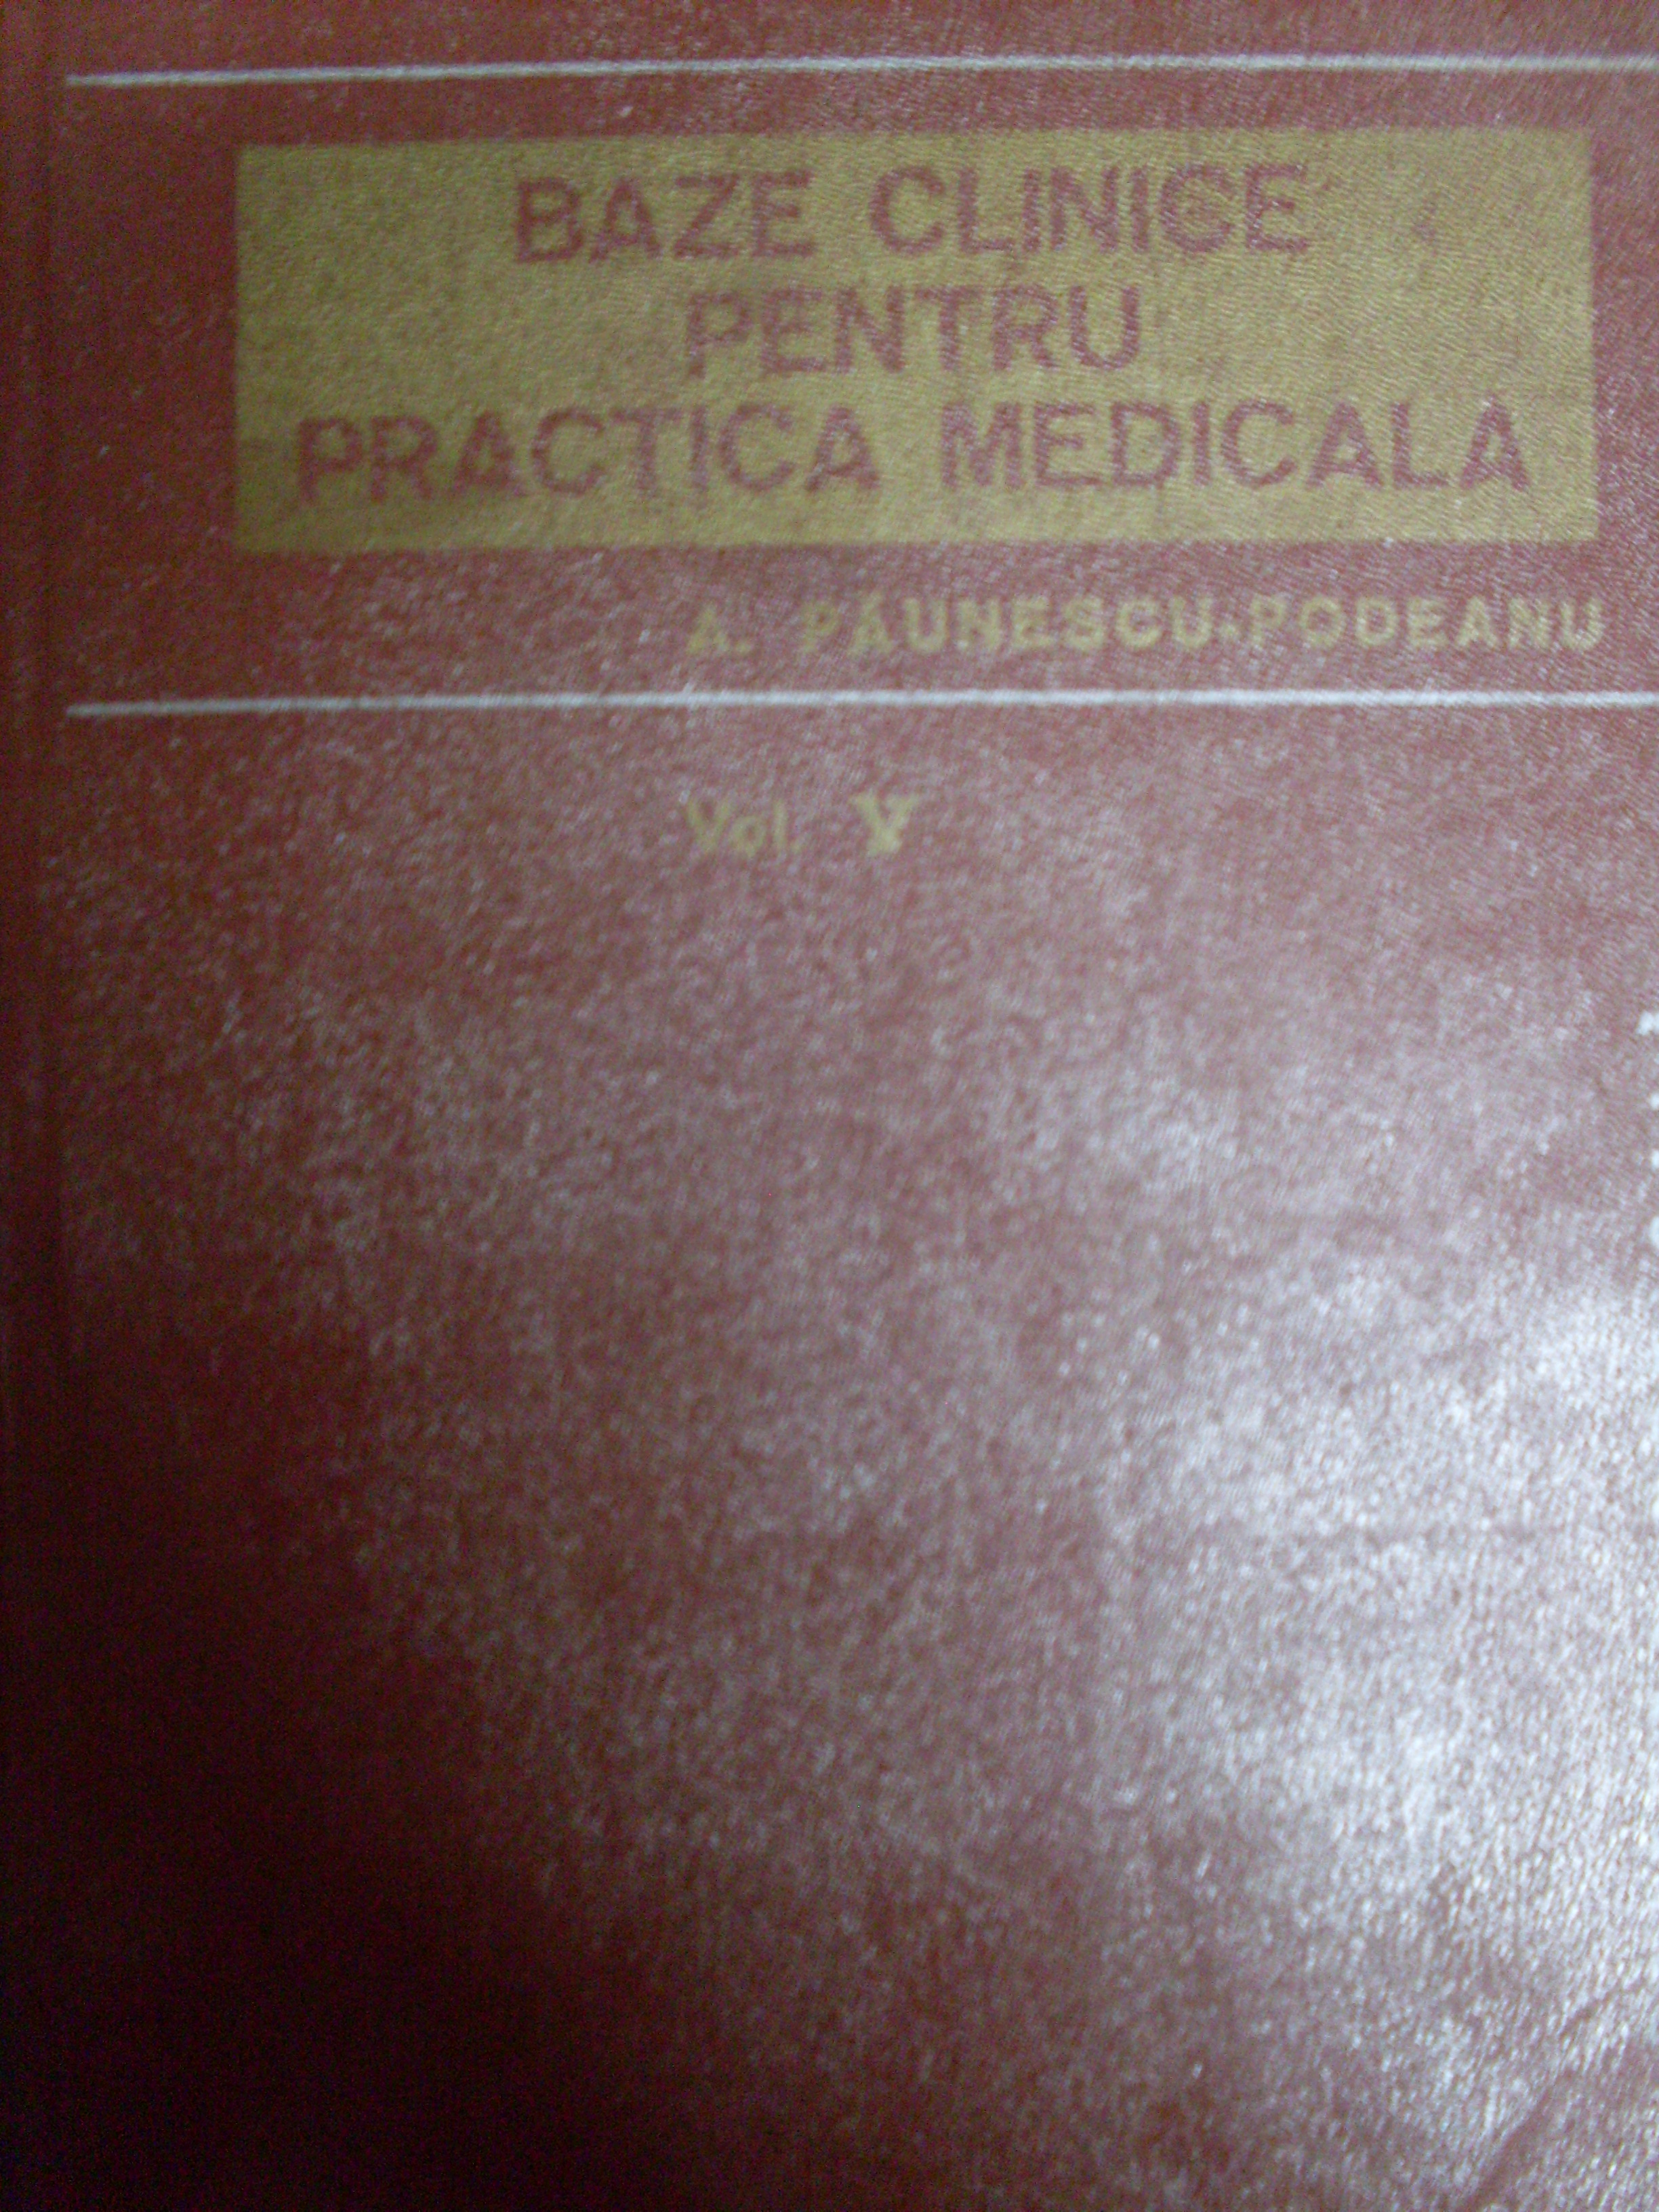 bazele clinice pentru practica medicala vol. 5                                                       a. paunescu-podeanu                                                                                 